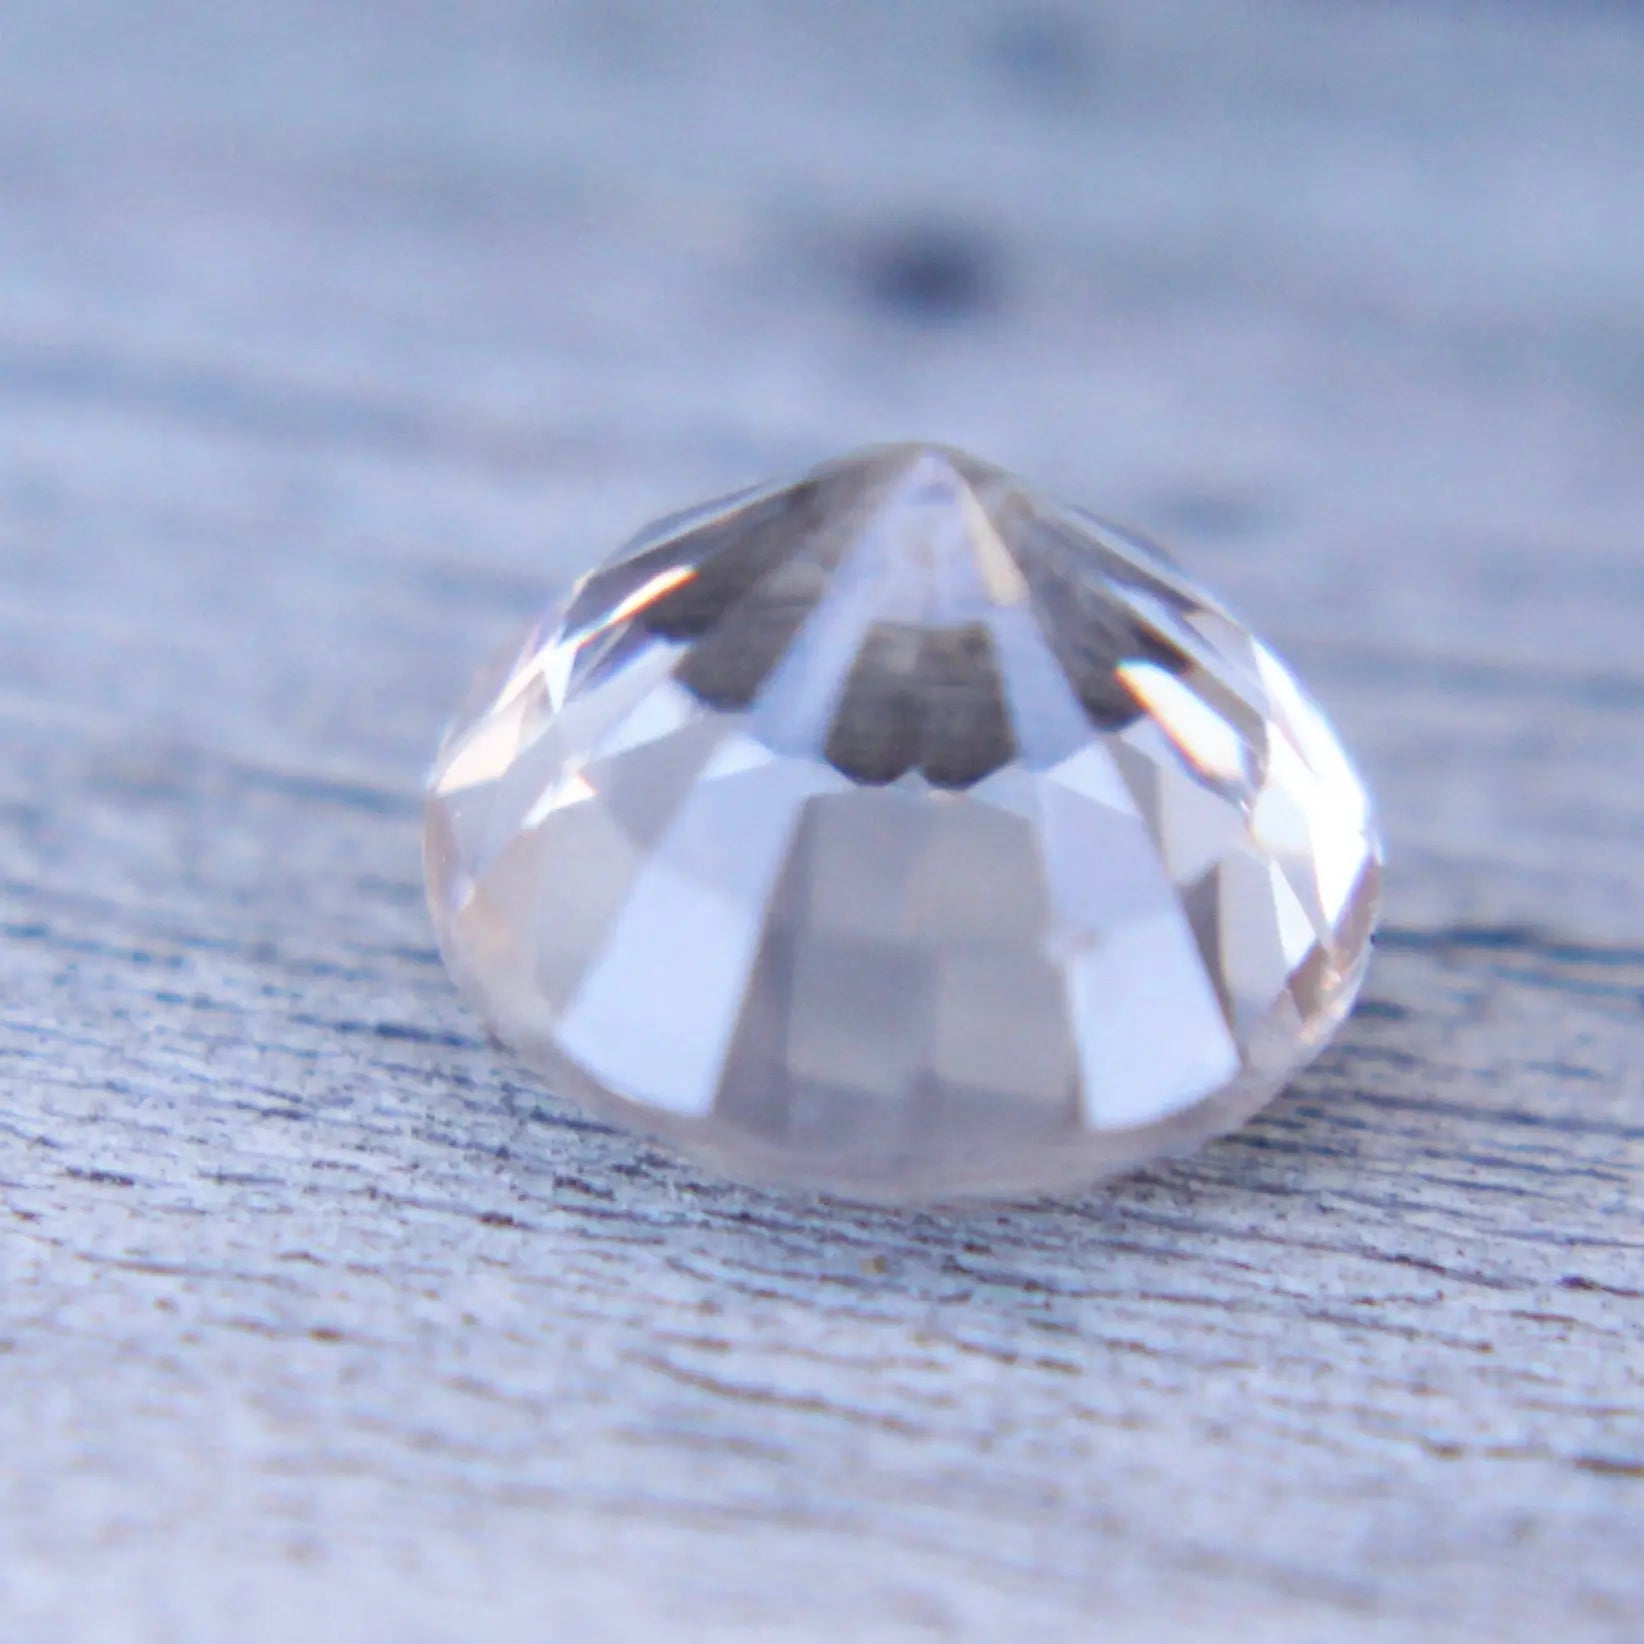 Natural Pale Peach Sapphire gems-756e